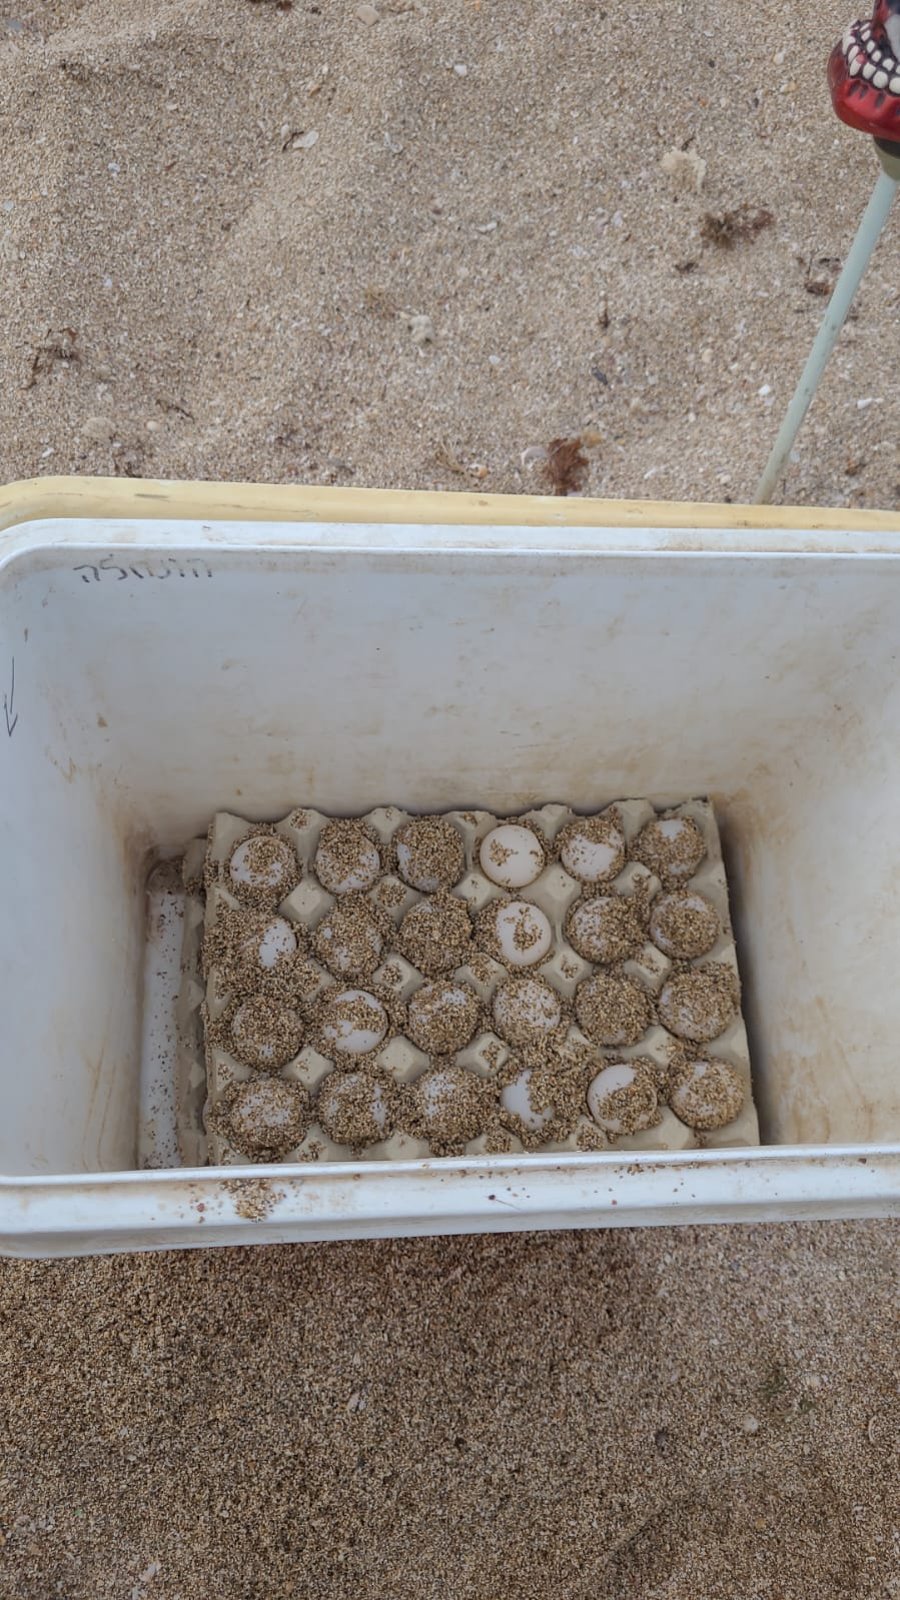 באזור חיפה: מתנדבים מצאו שני קינים של נקבת צב ים חומה